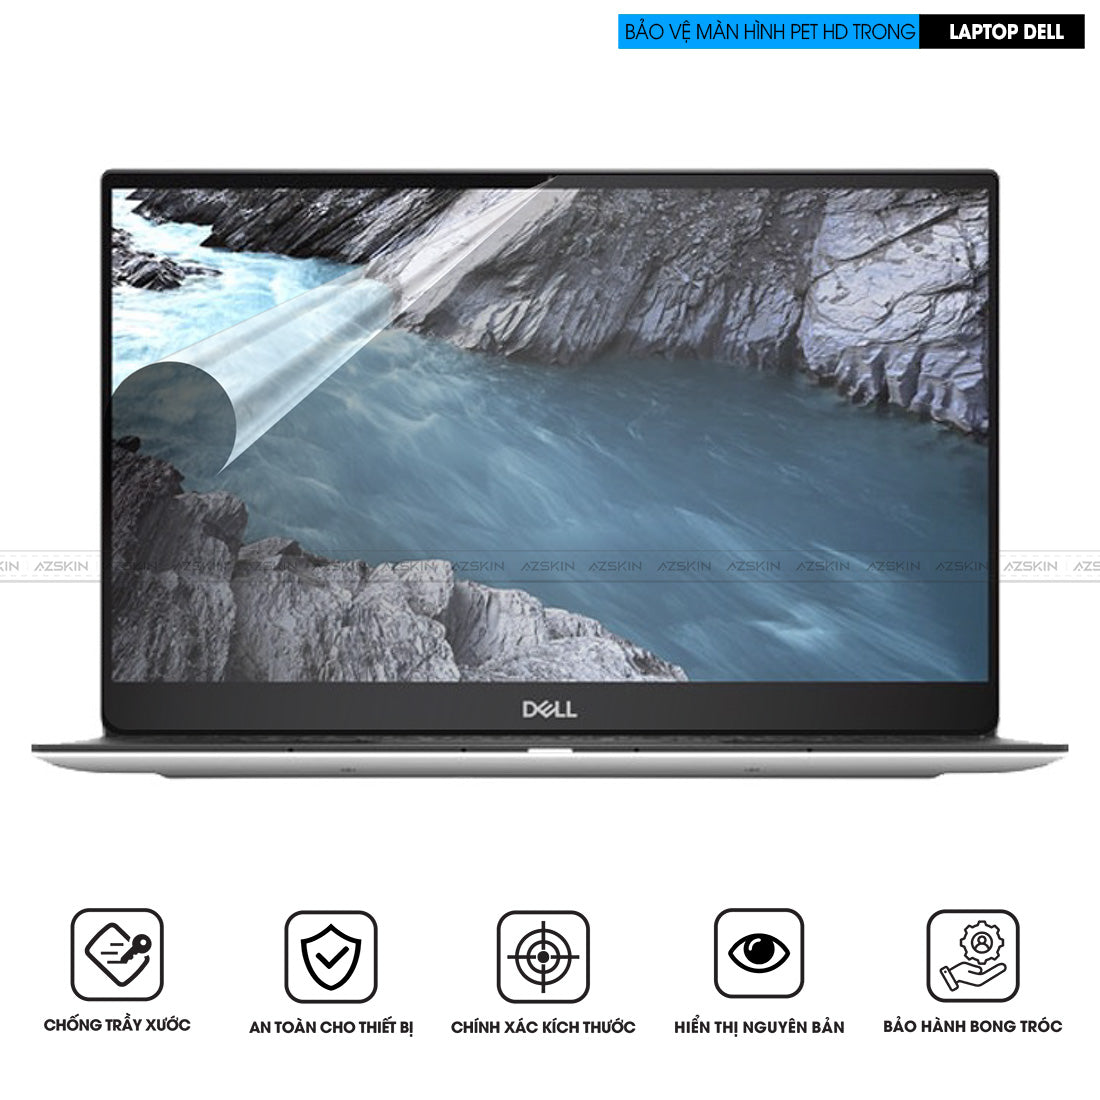 Miếng dán màn hình Laptop Dell chống xước PET HD